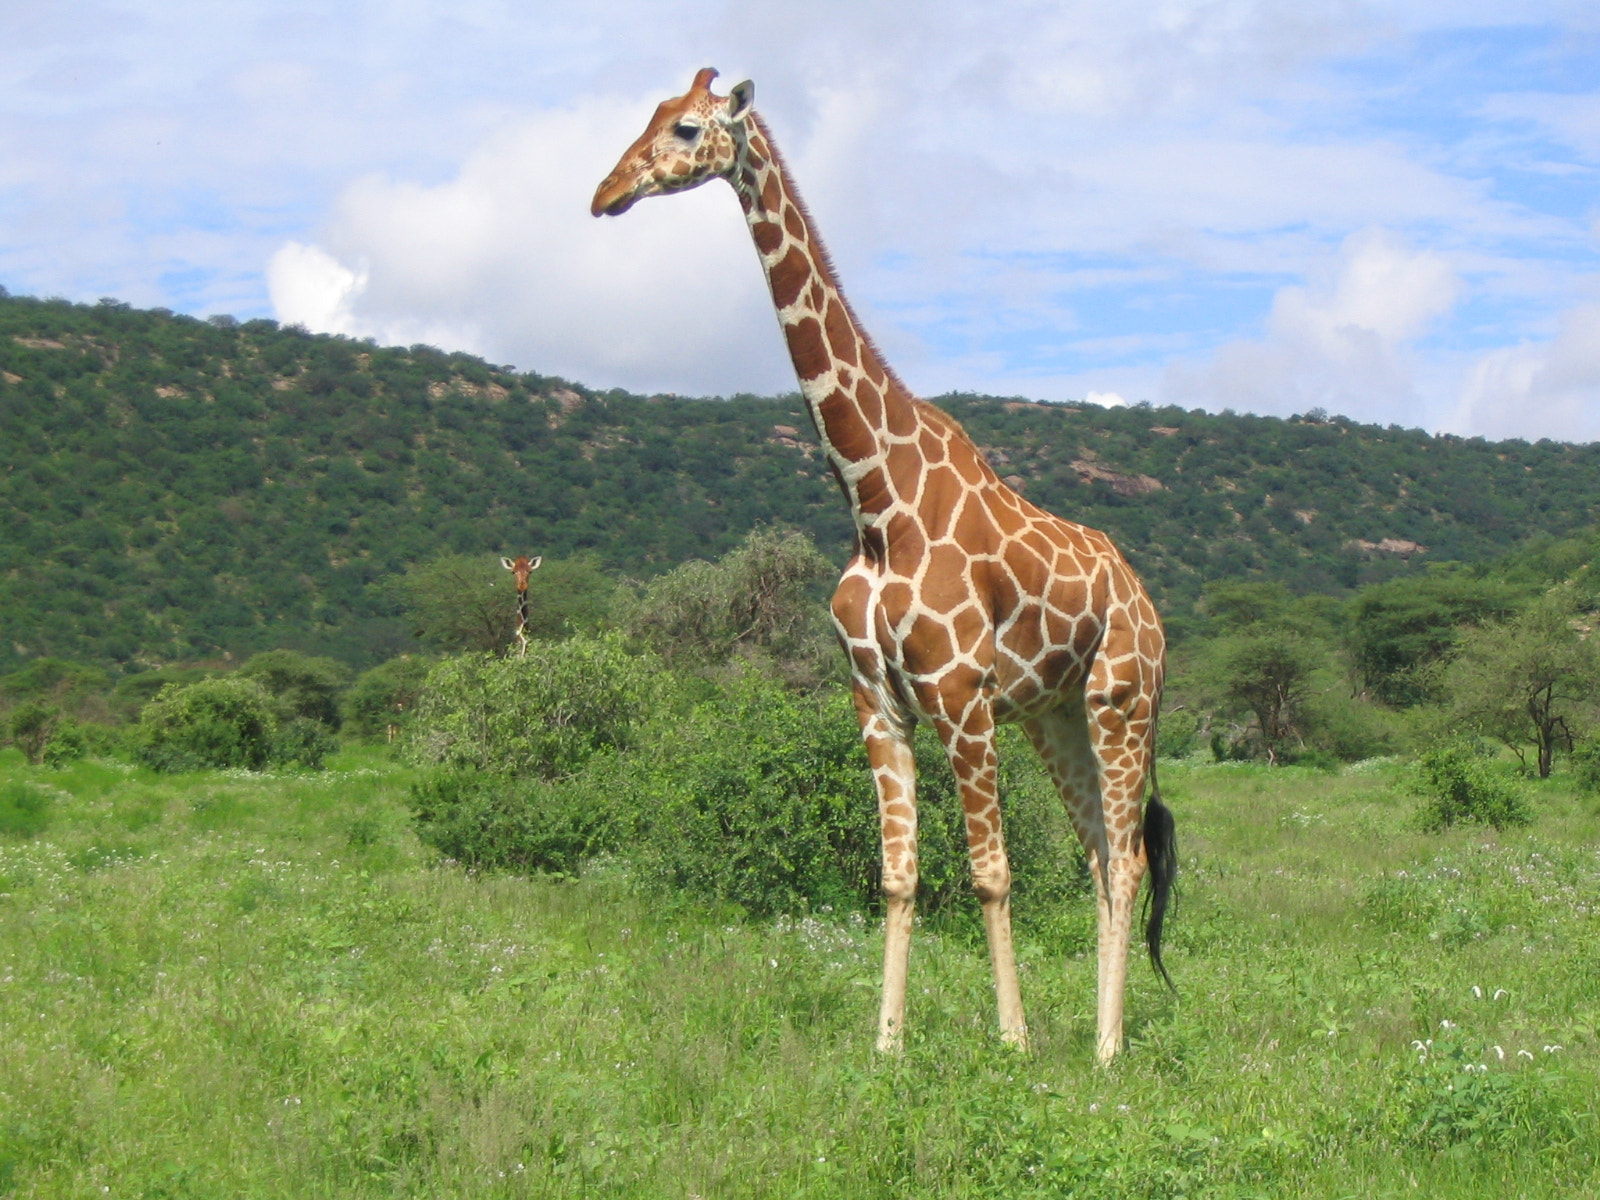 Canon POWERSHOT A70 sample photo. Samburu giraffe 2 photography